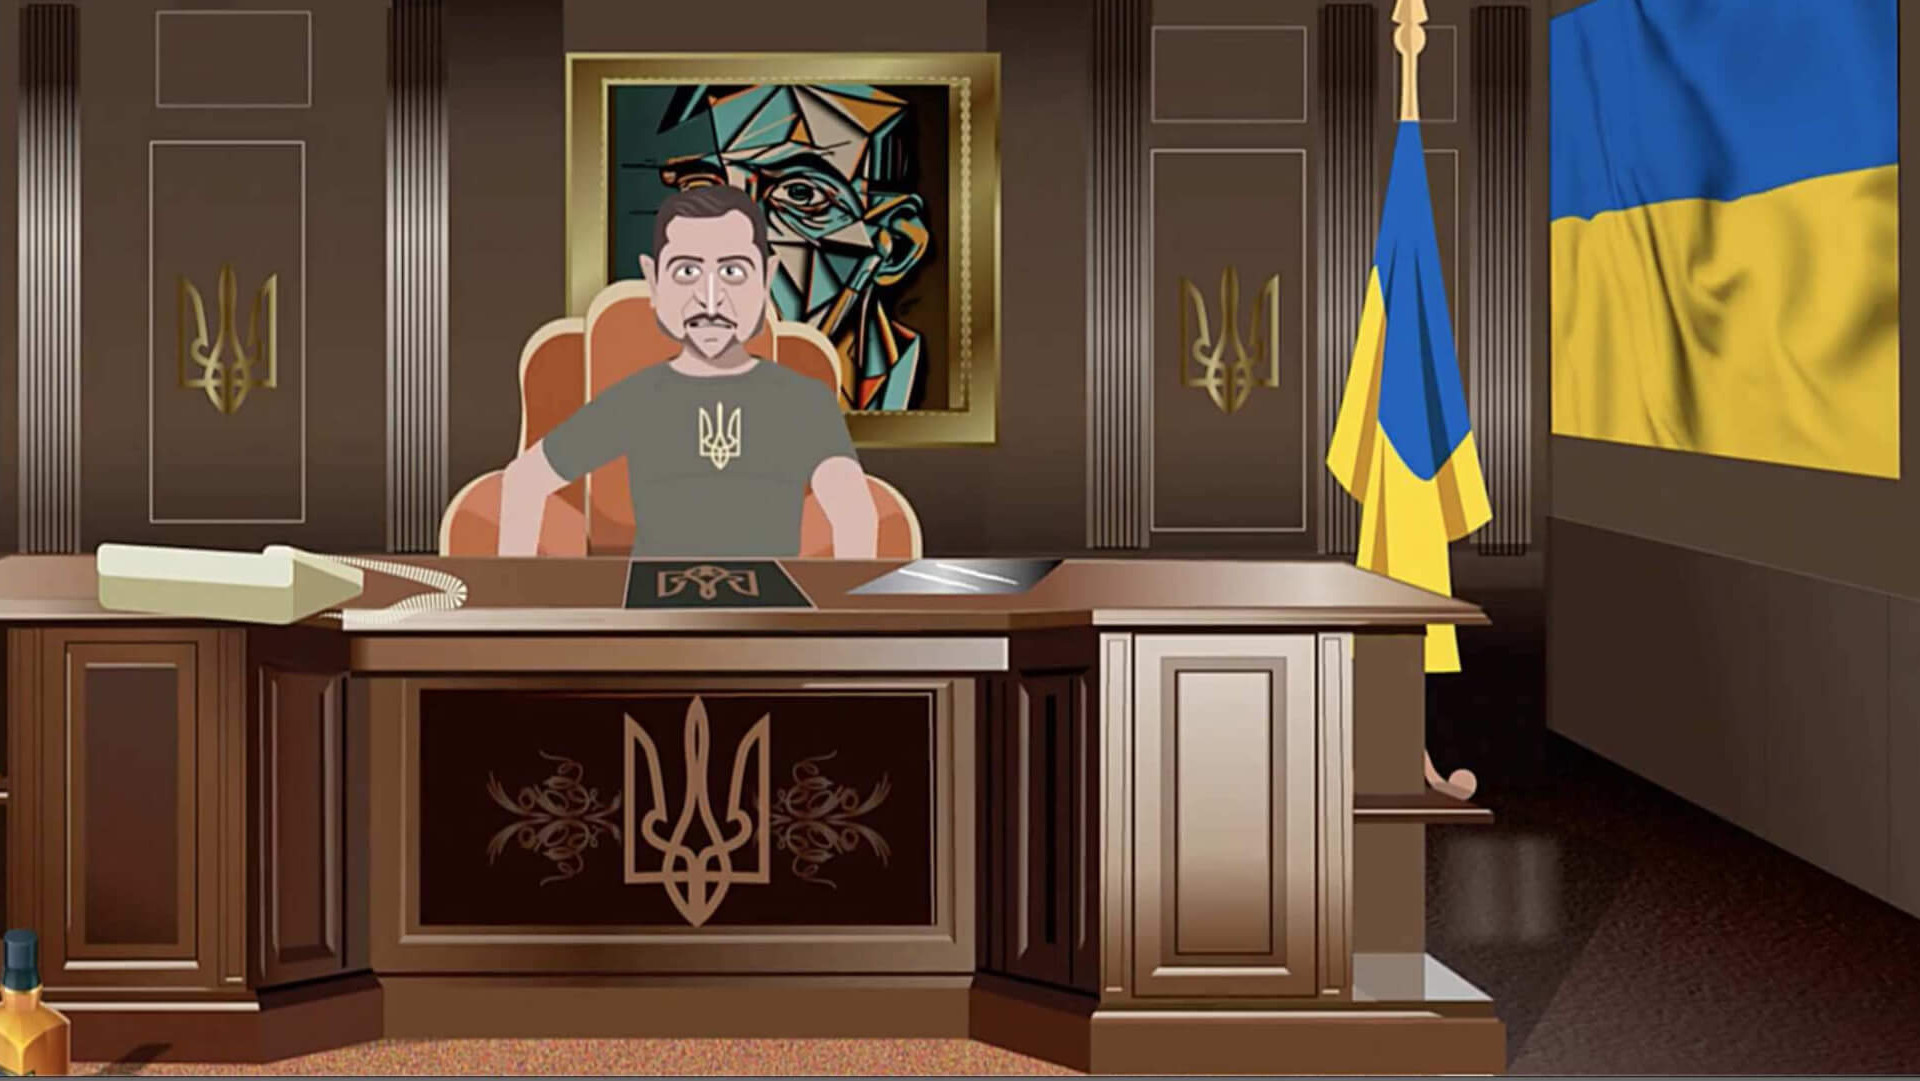 Dieser Screenshot stammt aus einer russischen Propaganda-Serie. Diese ist Teil einer anti-ukrainischen Desinformation-Kampagne.